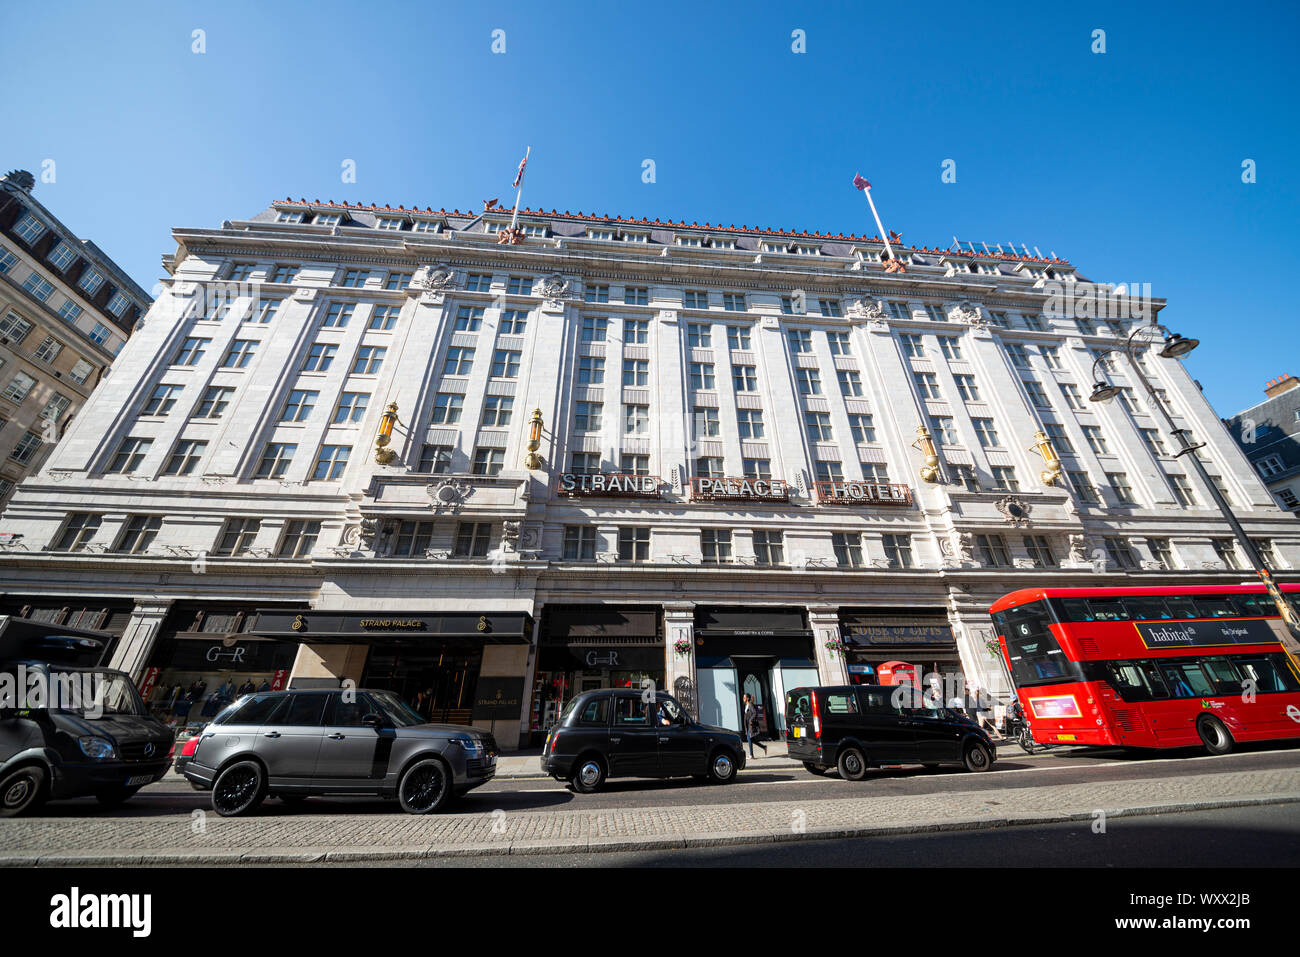 Strand Palace Hotel. Hotel im Art déco-Stil in The Strand, London, Großbritannien, mit schwarzen Taxis und einem roten Londoner Bus. Rote Telefonbox. Blauer Himmel Stockfoto